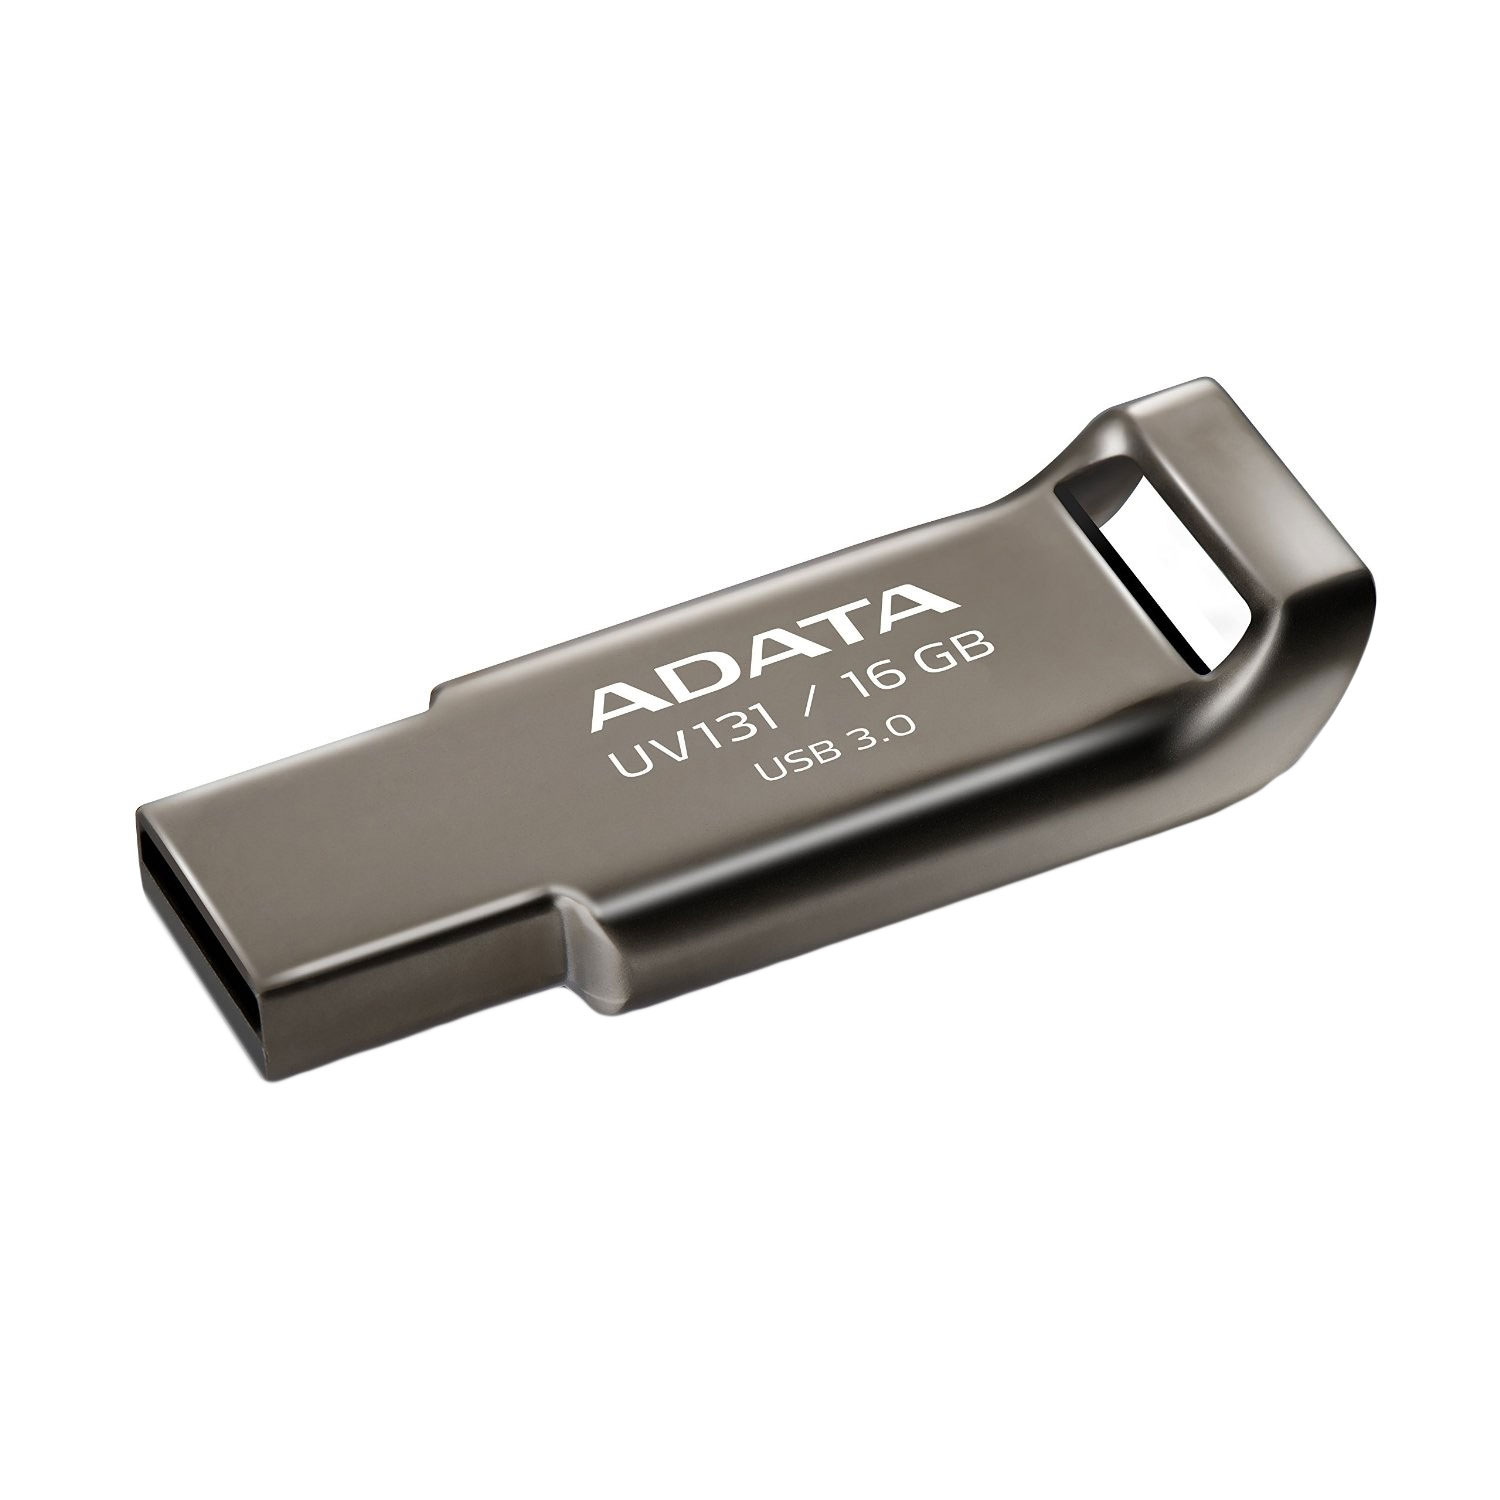  Memorie USB A-DATA AUV131-16G-RGY, 16GB, USB 3.0, Auriu 